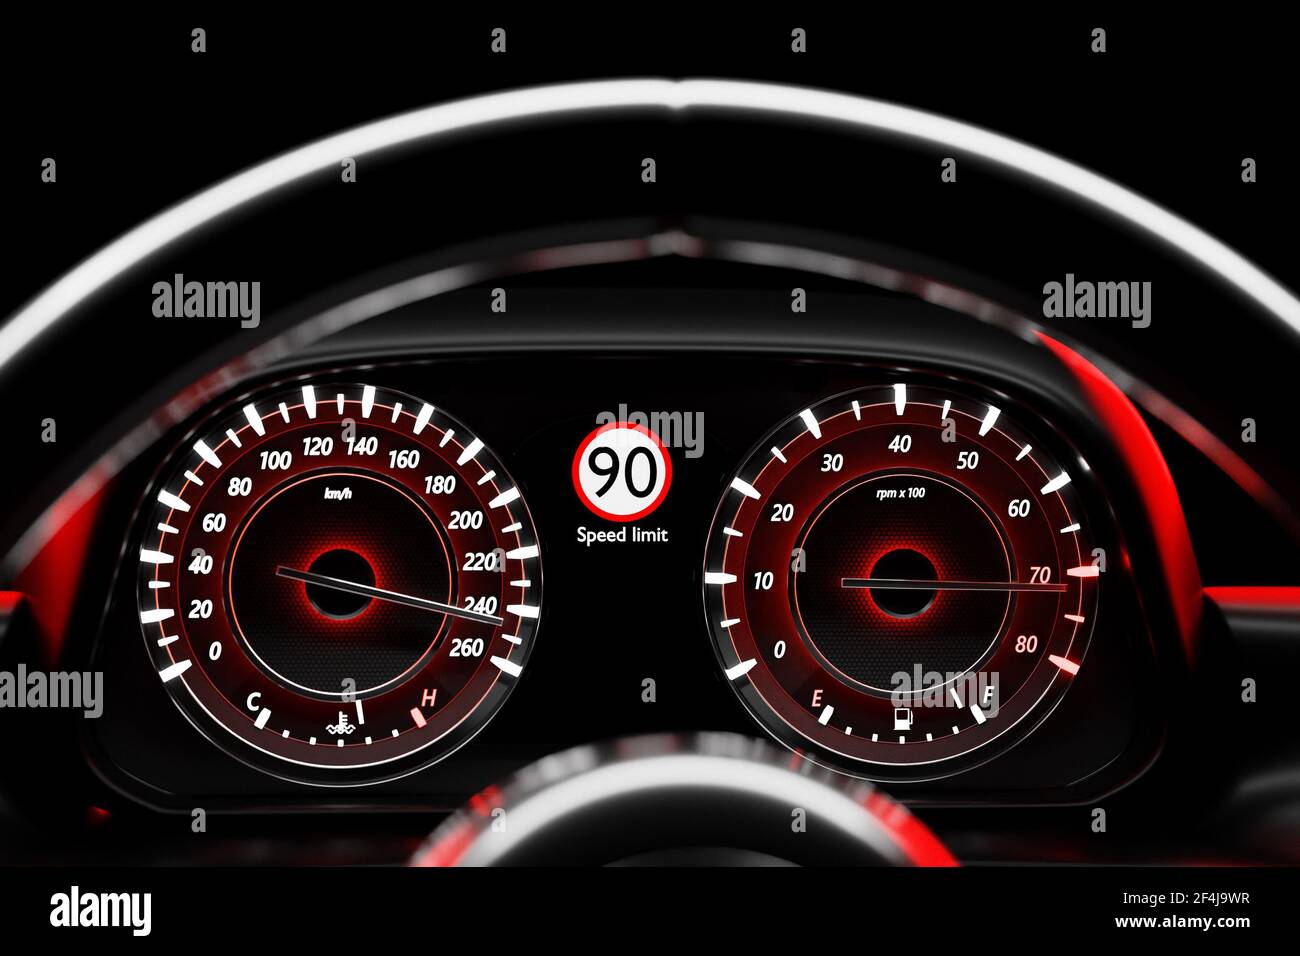 Illustrazione 3D primo piano pannello auto nero, tachimetro luminoso digitale in stile sportivo. L'ago del tachimetro indica una velocità massima di 220 km / h. Foto Stock